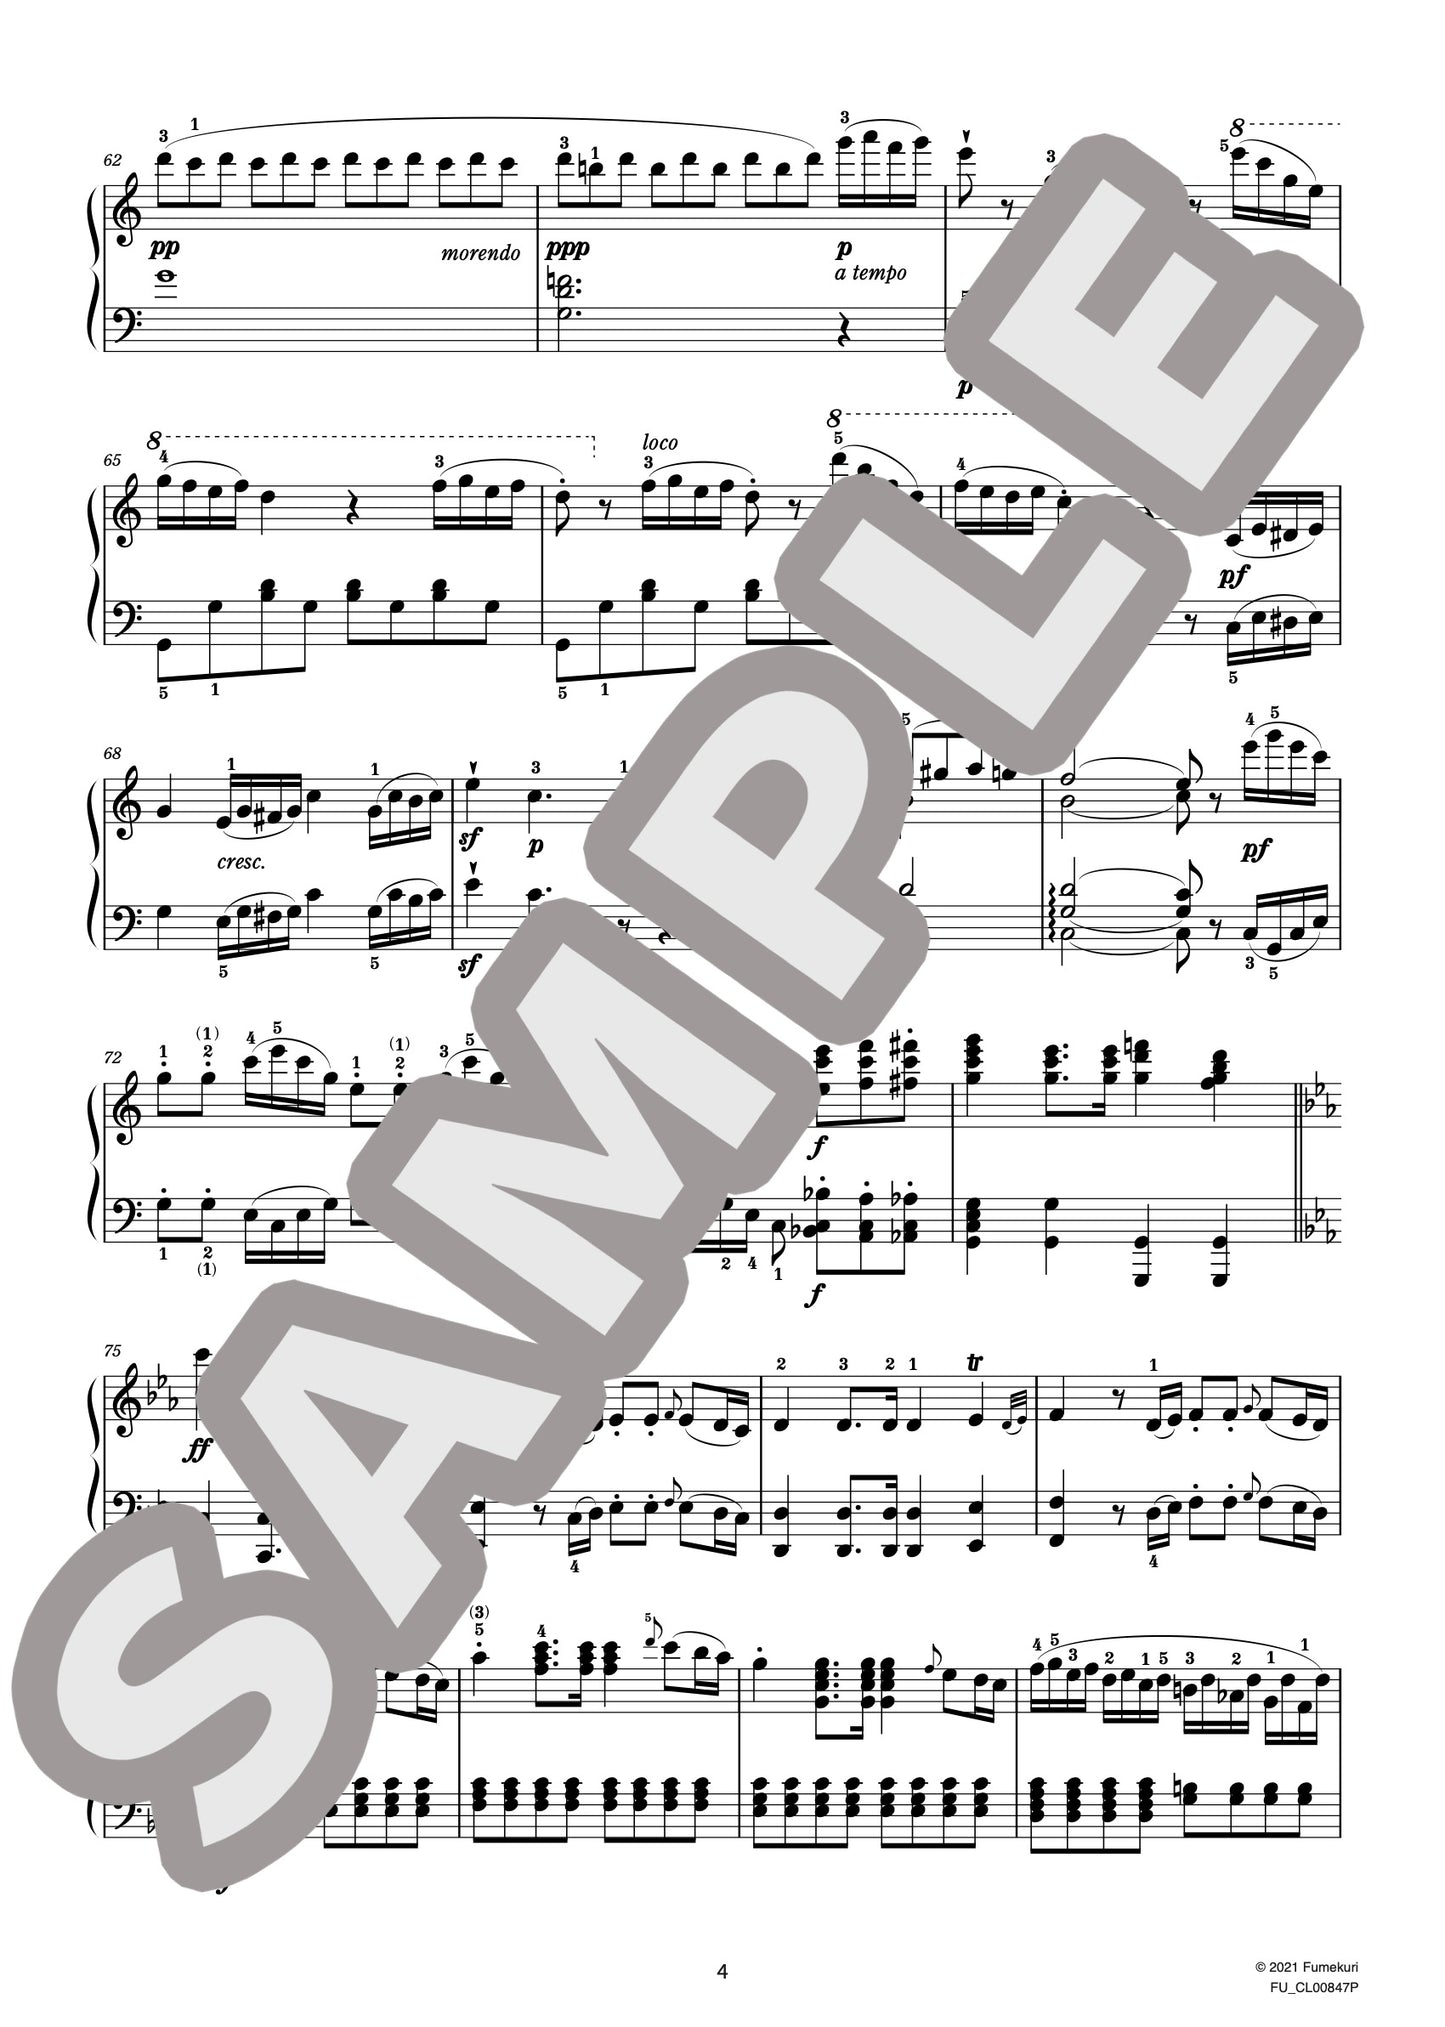 モーツァルトの『フィガロの結婚』のアリア 作品124 “もう飛ぶまいぞこの喋々”のテーマによる幻想曲（HUMMEL) / クラシック・オリジナル楽曲【中上級】